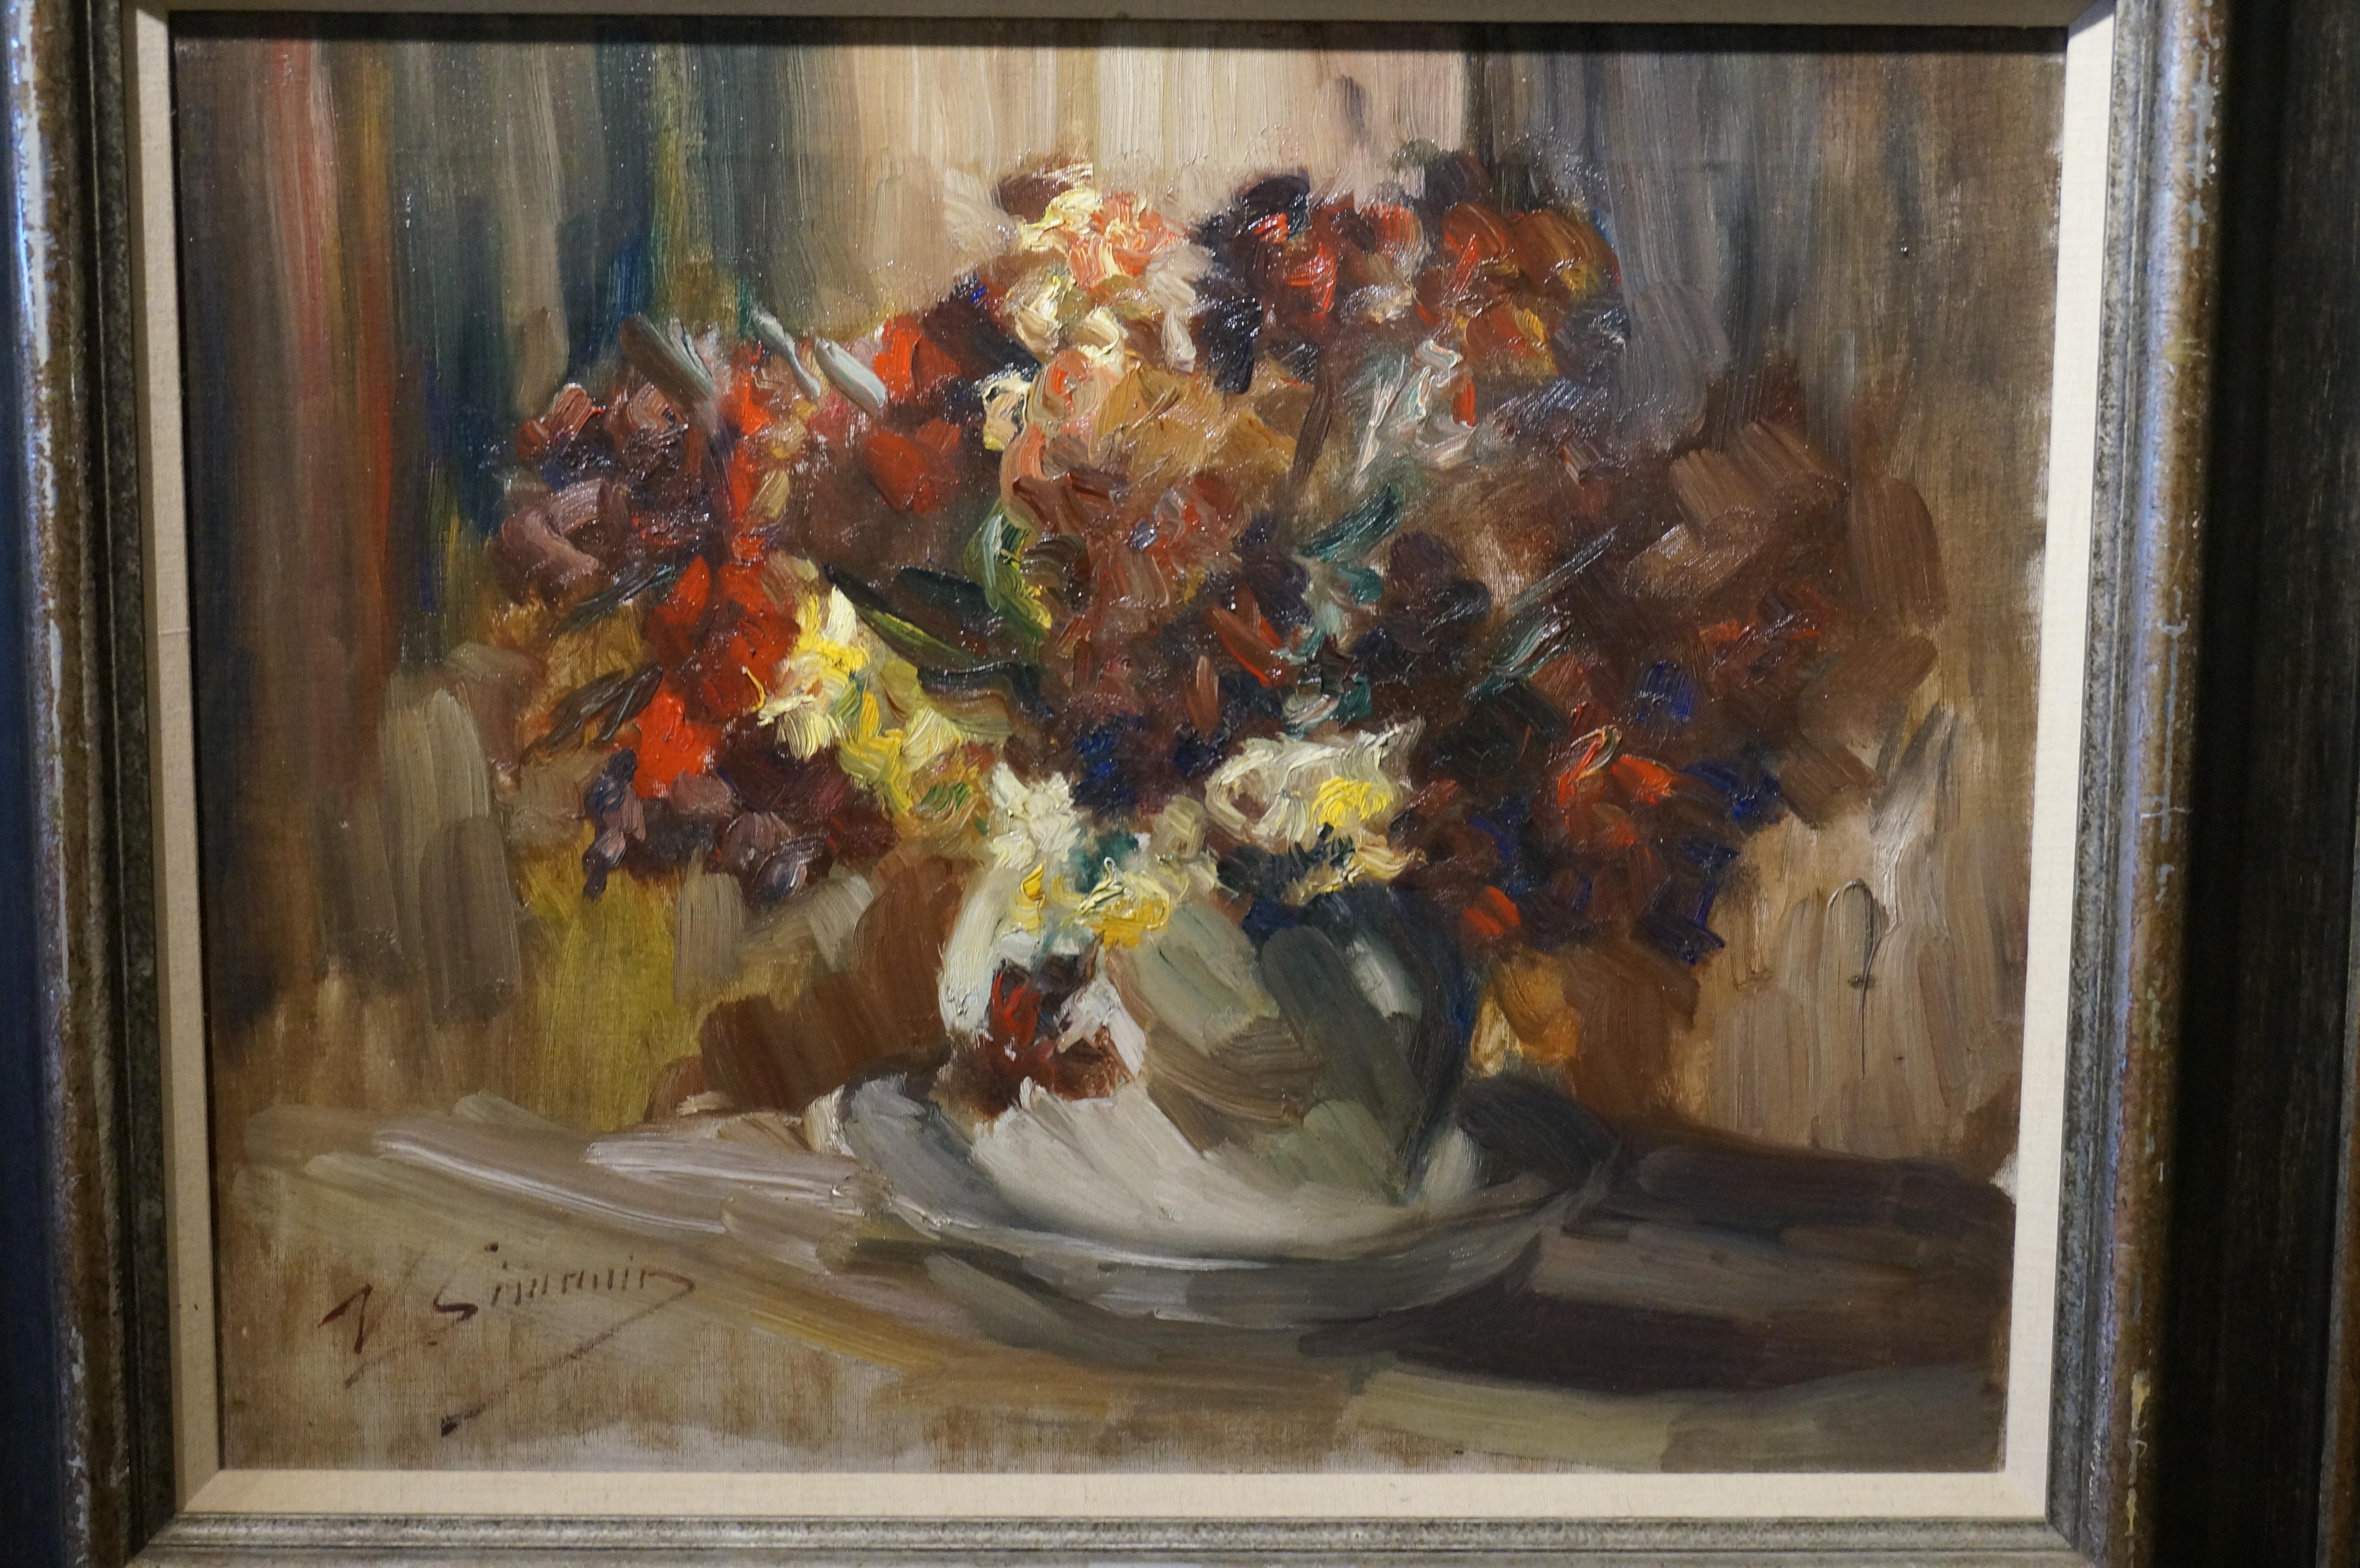 Peinture de style Stil-life de fleurs, Vicor Simonin, impressionniste, huile sur toile - Painting de Victor Simonin